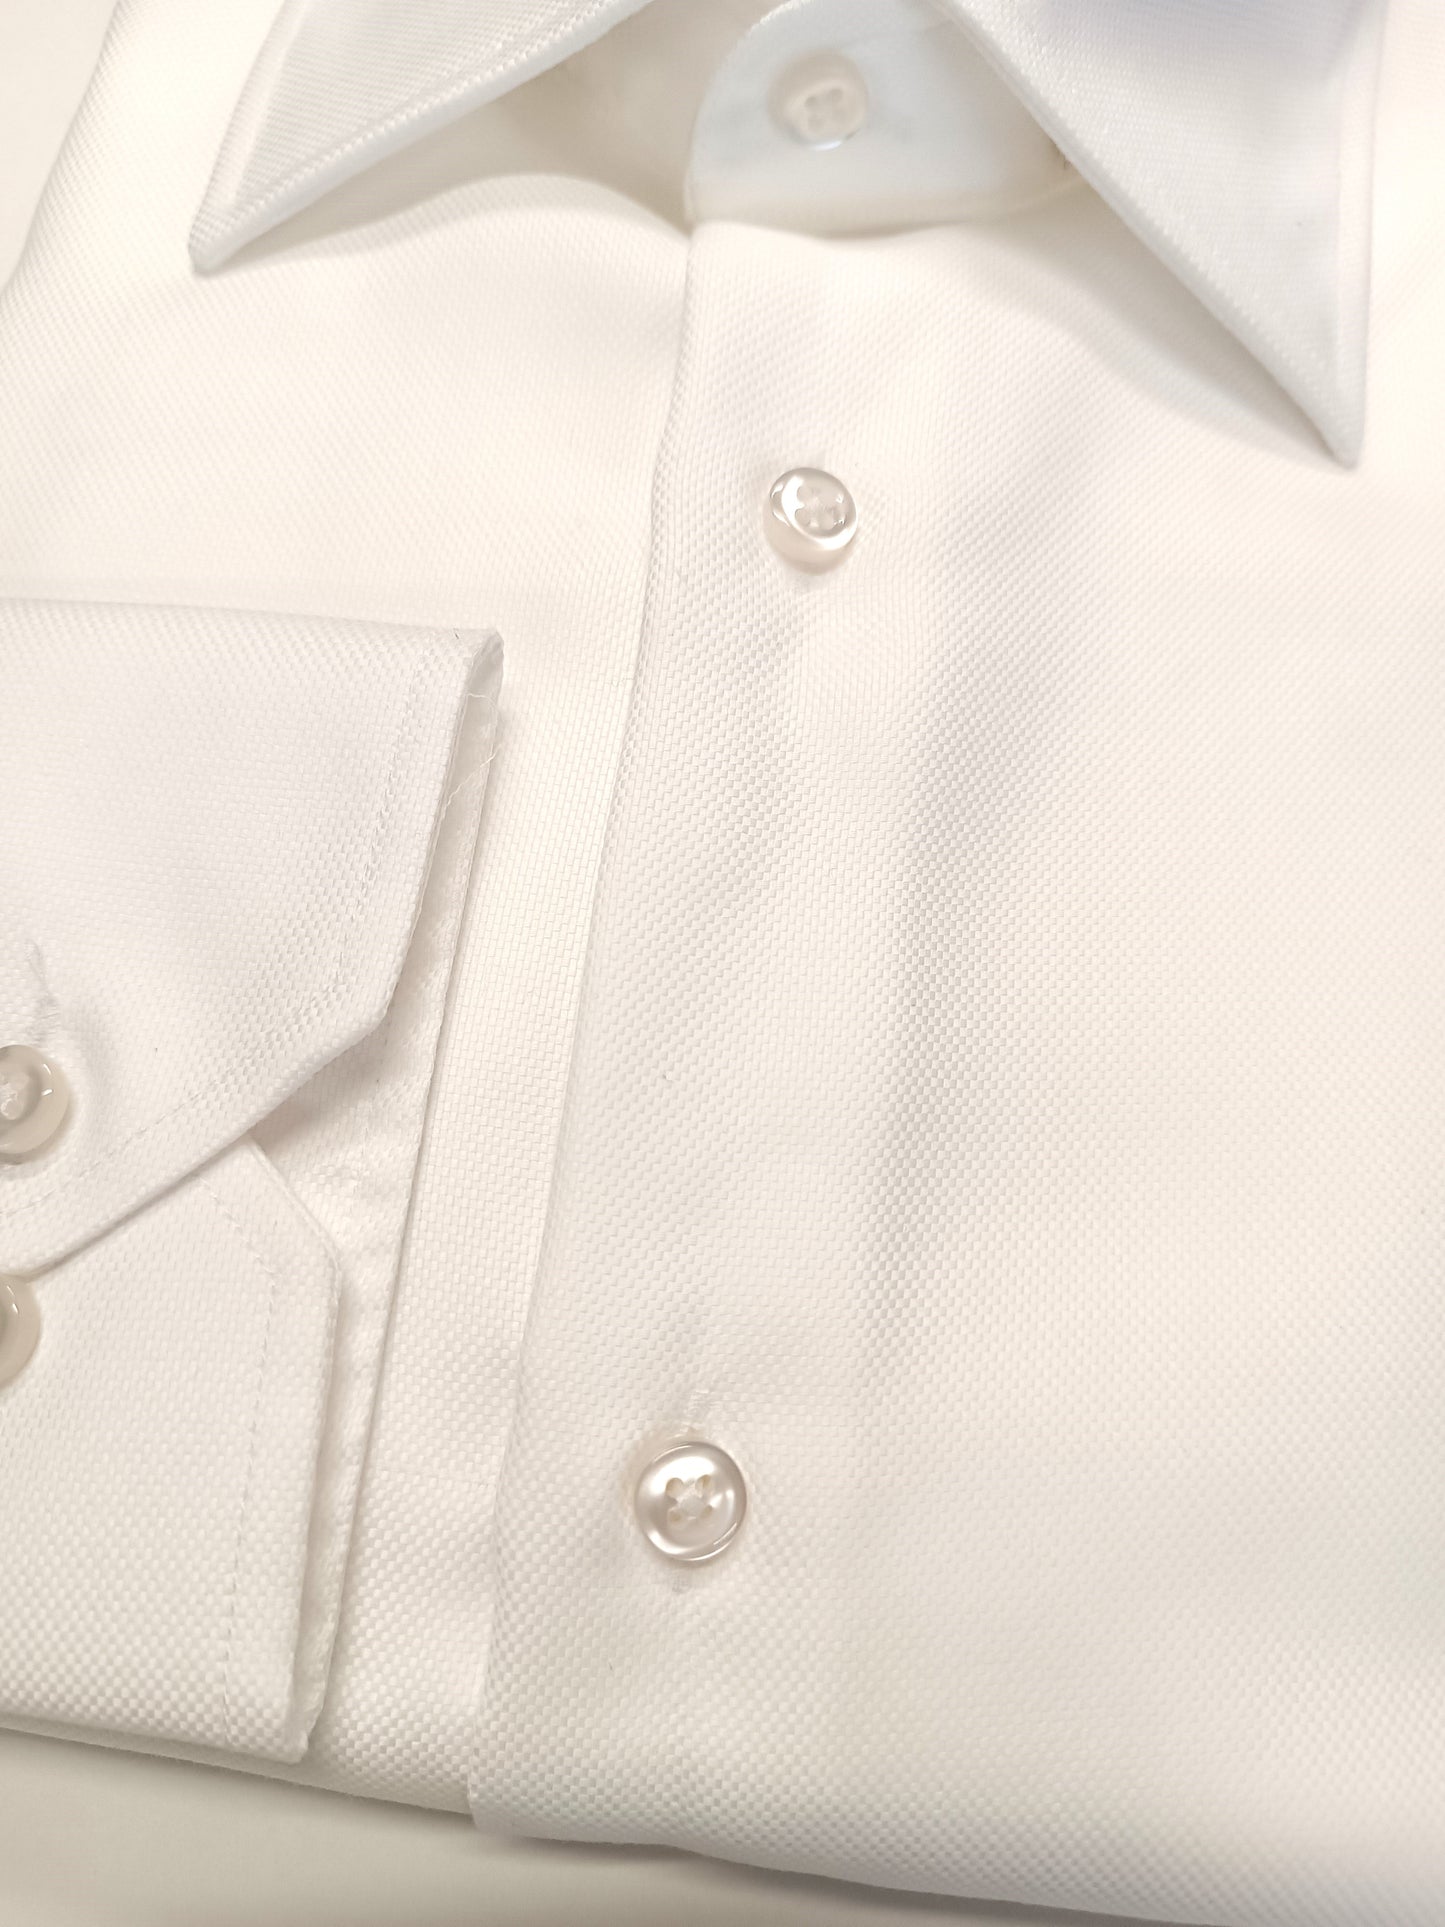 Camicia uomo NO STIRO bianca con colletto francese